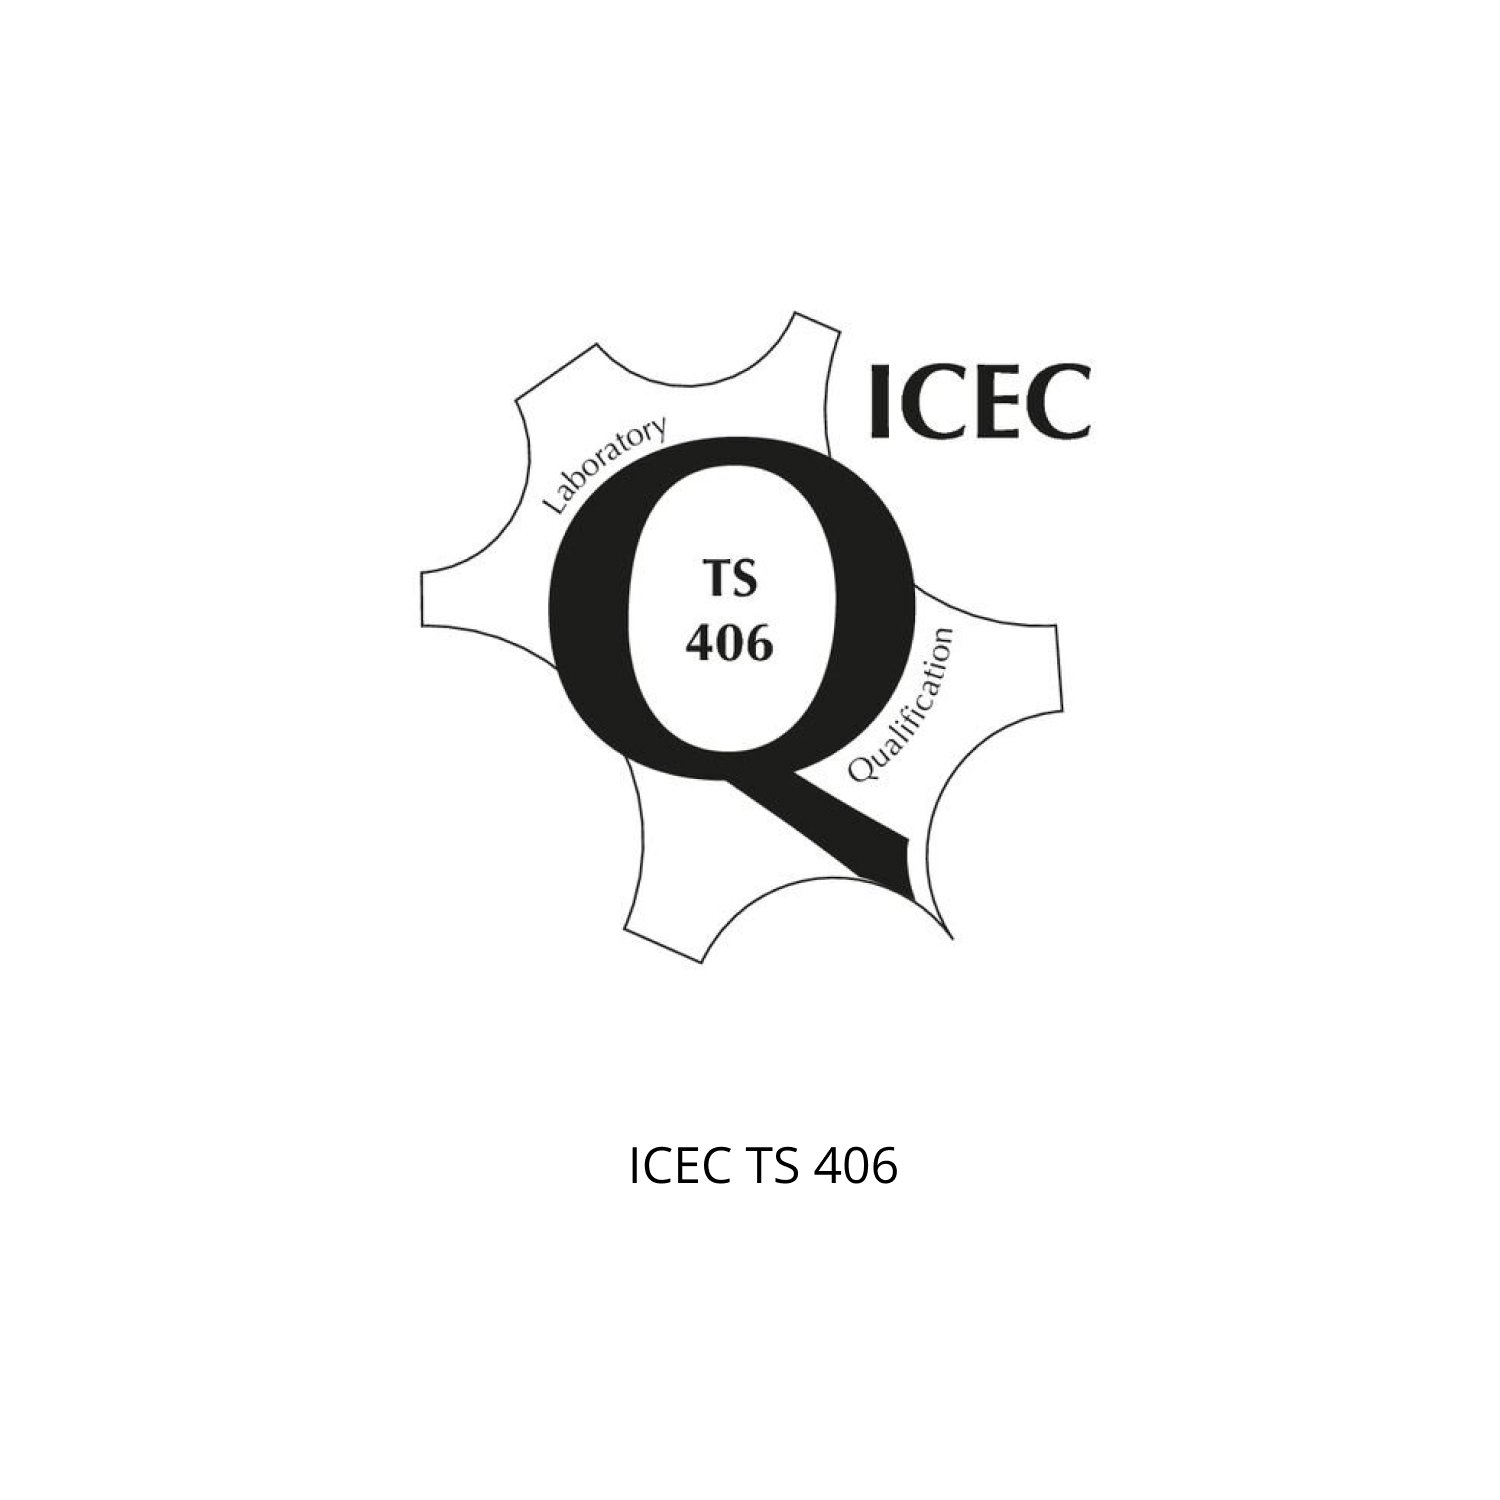 ICEC TS 406.jpg (Copia) (Copia) (Copia) (Copia)